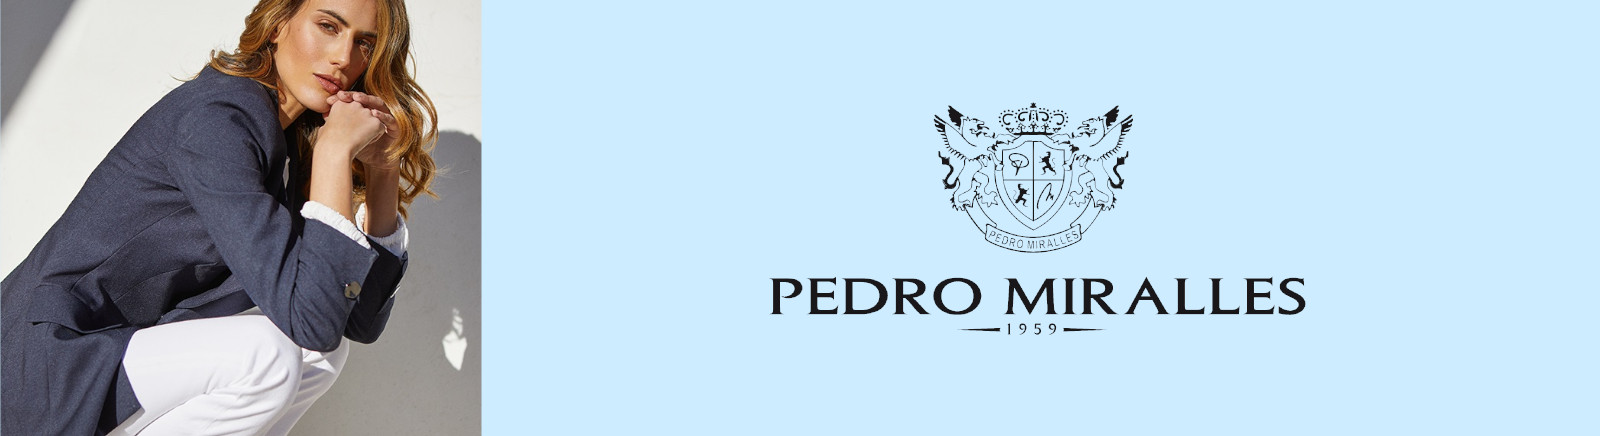 Pedro Miralles Markenschuhe online entdecken im Juppen Shop